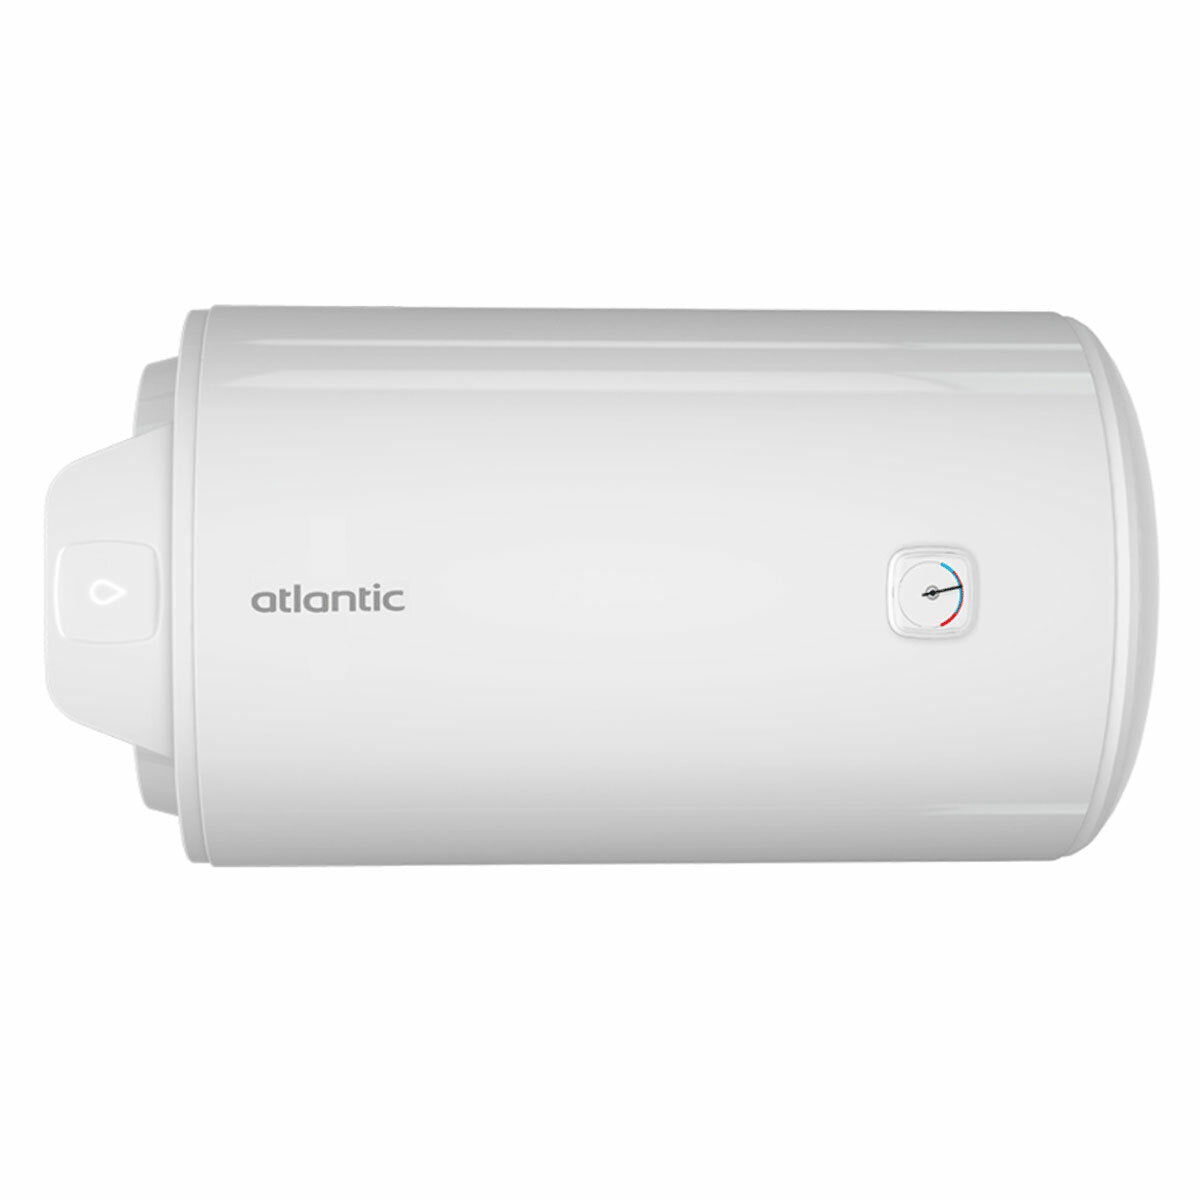 Atlantic EGO 100 horizontaler elektrischer Warmwasserbereiter 100 Liter 2 Jahre Garantie